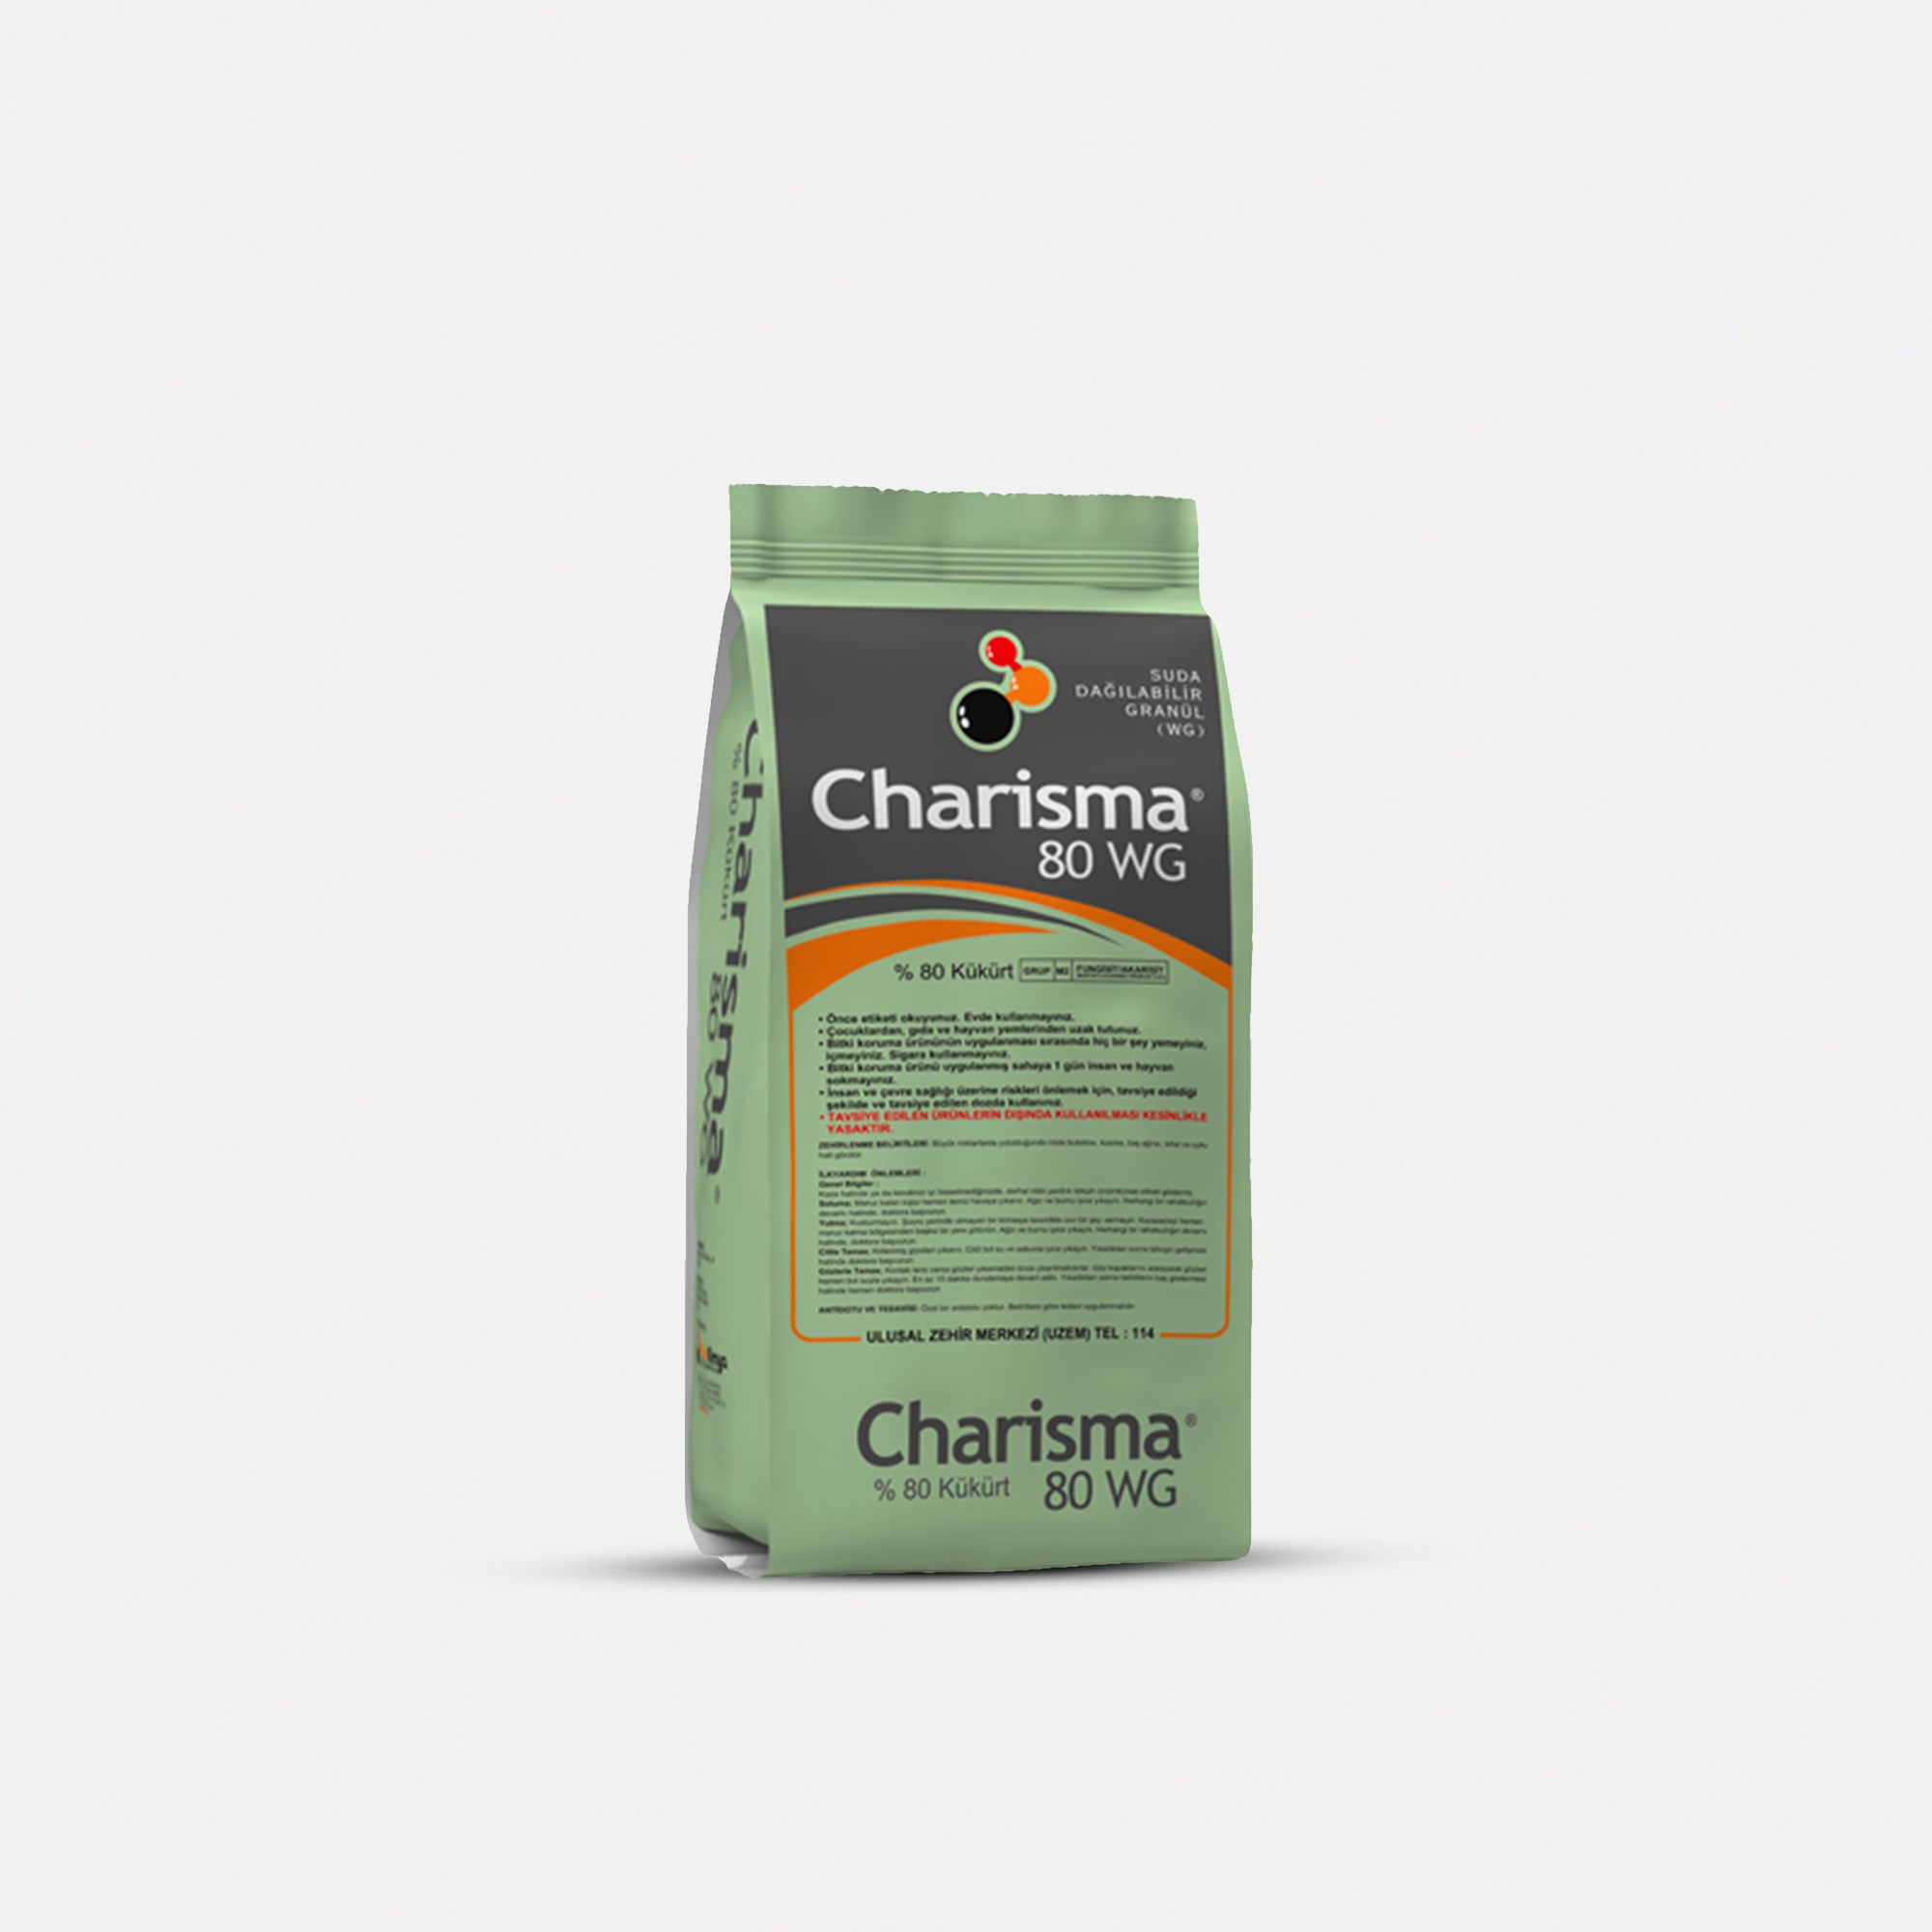 Charisma 80 WG / Sulphur 80% / Platin Kimya / 0.8 kq, əd